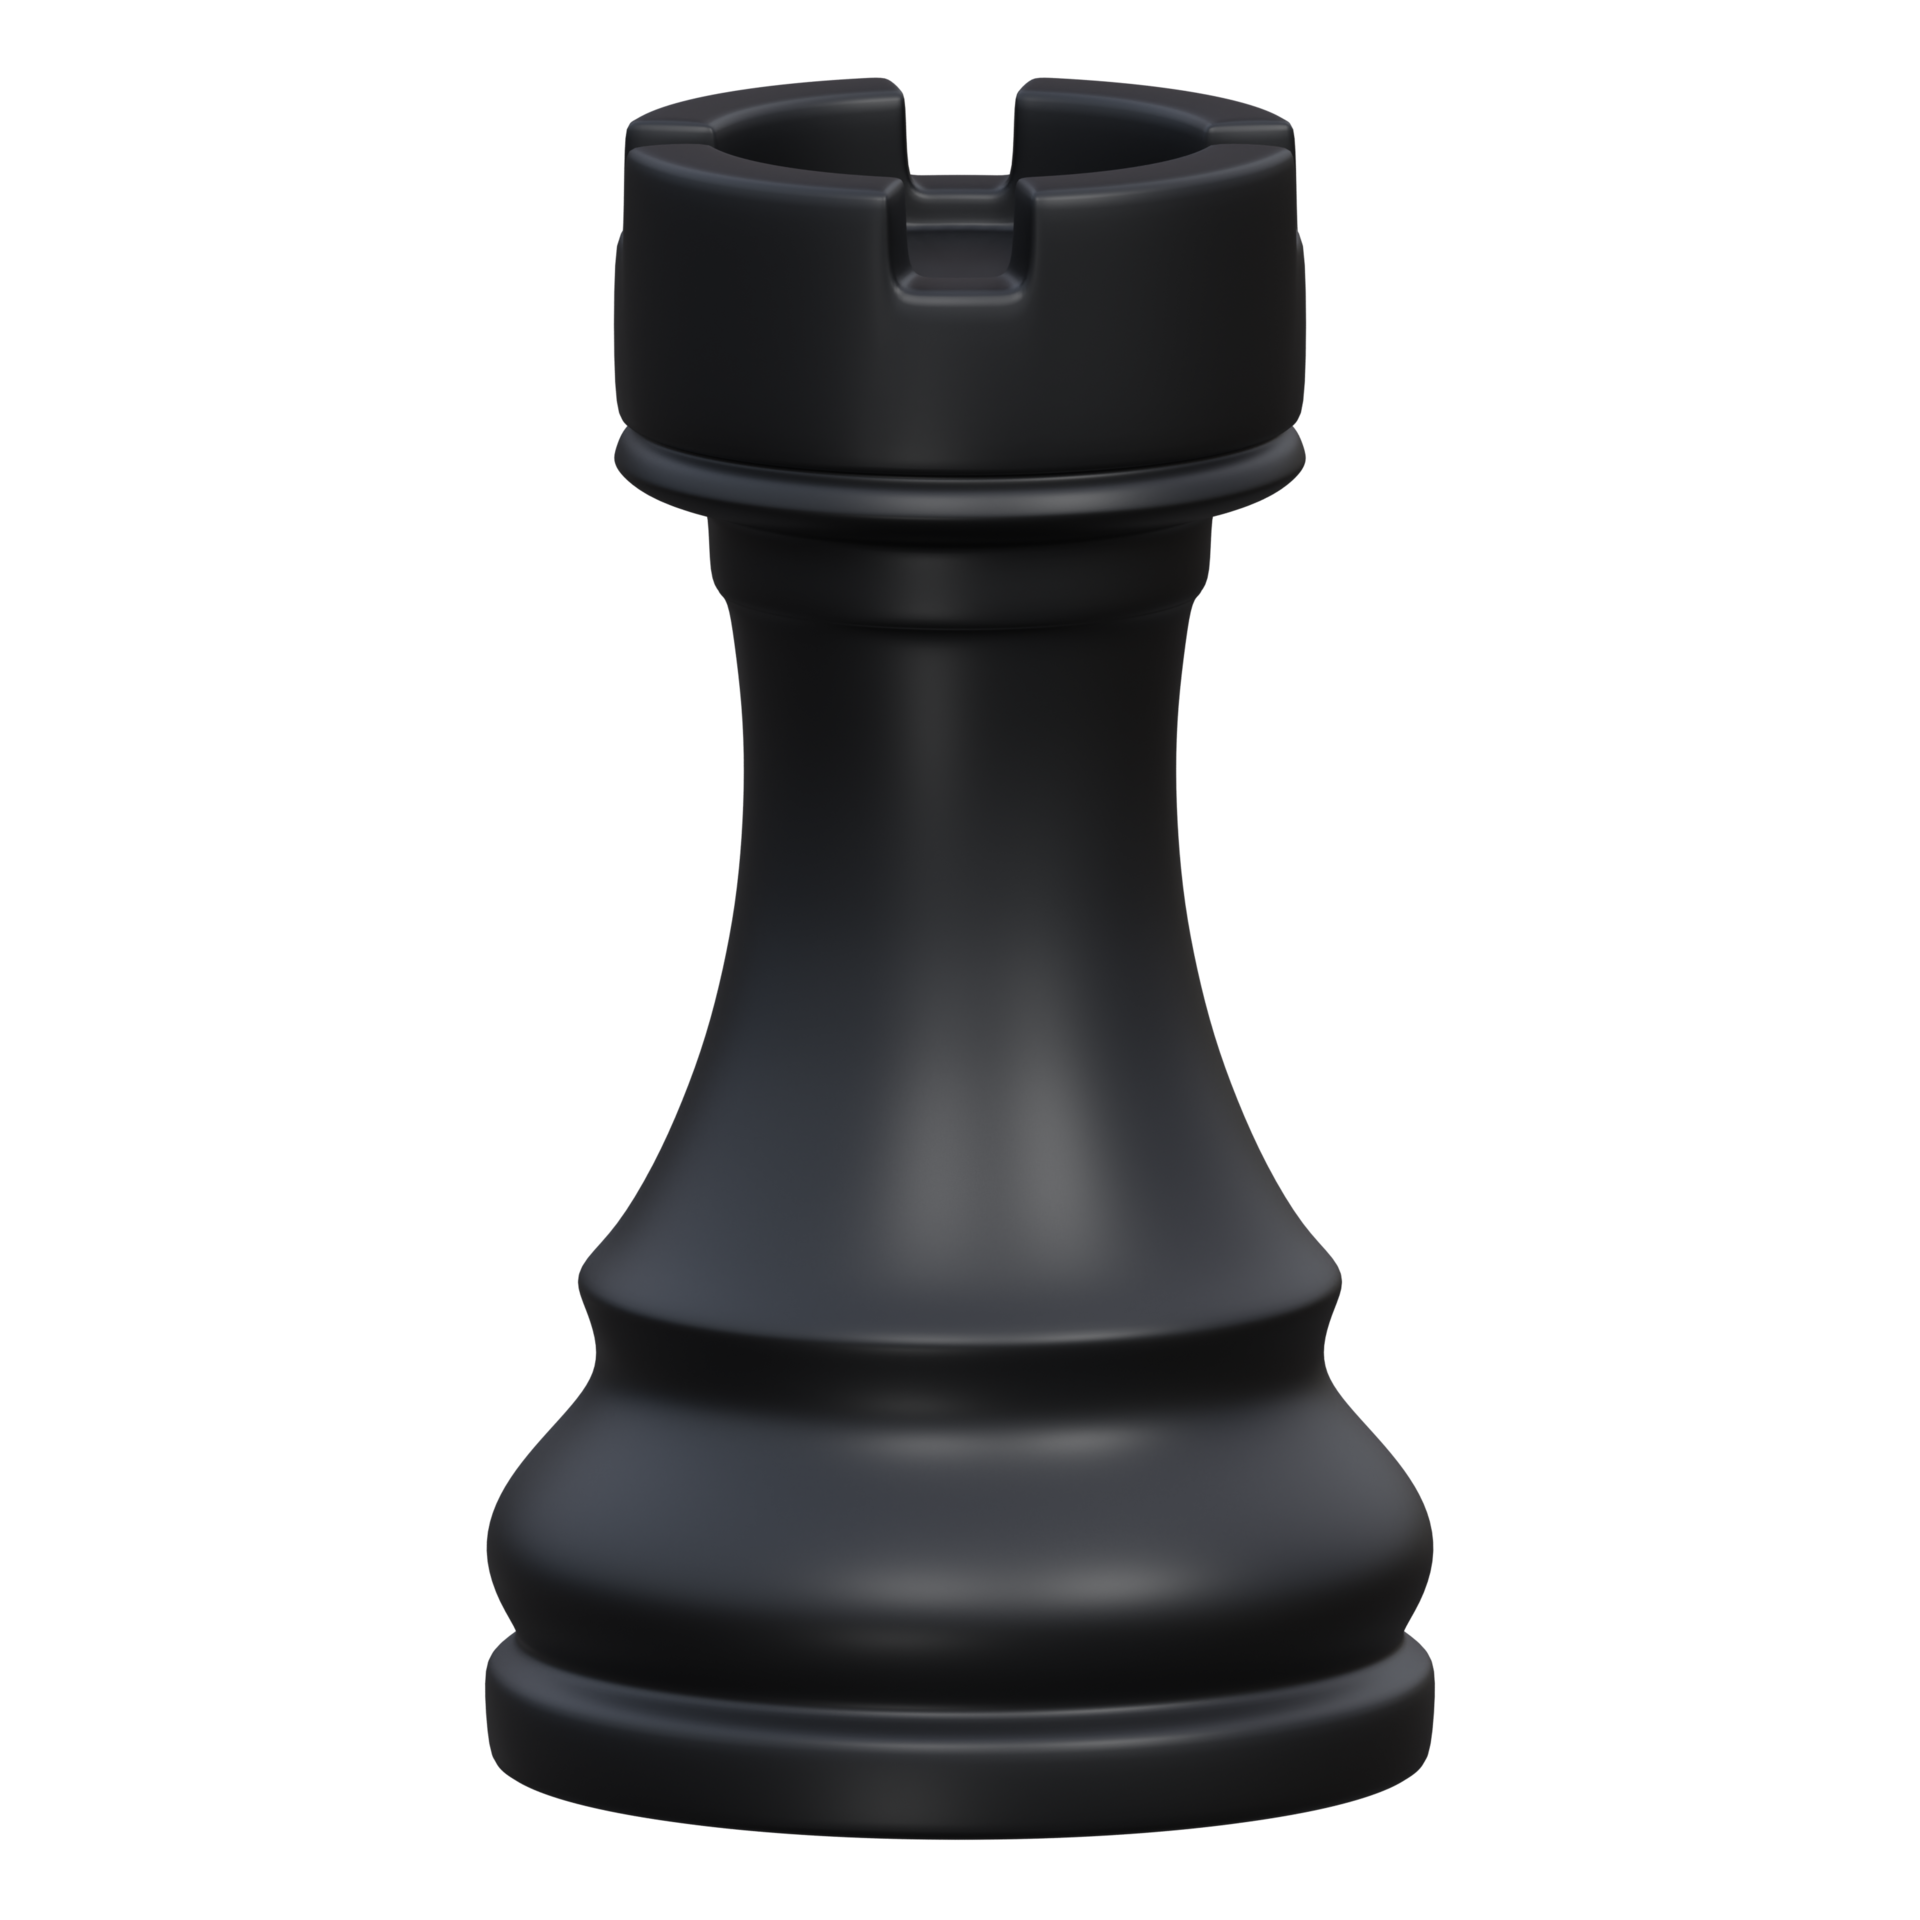 Tabuleiro de xadrez 3d em fundo transparente